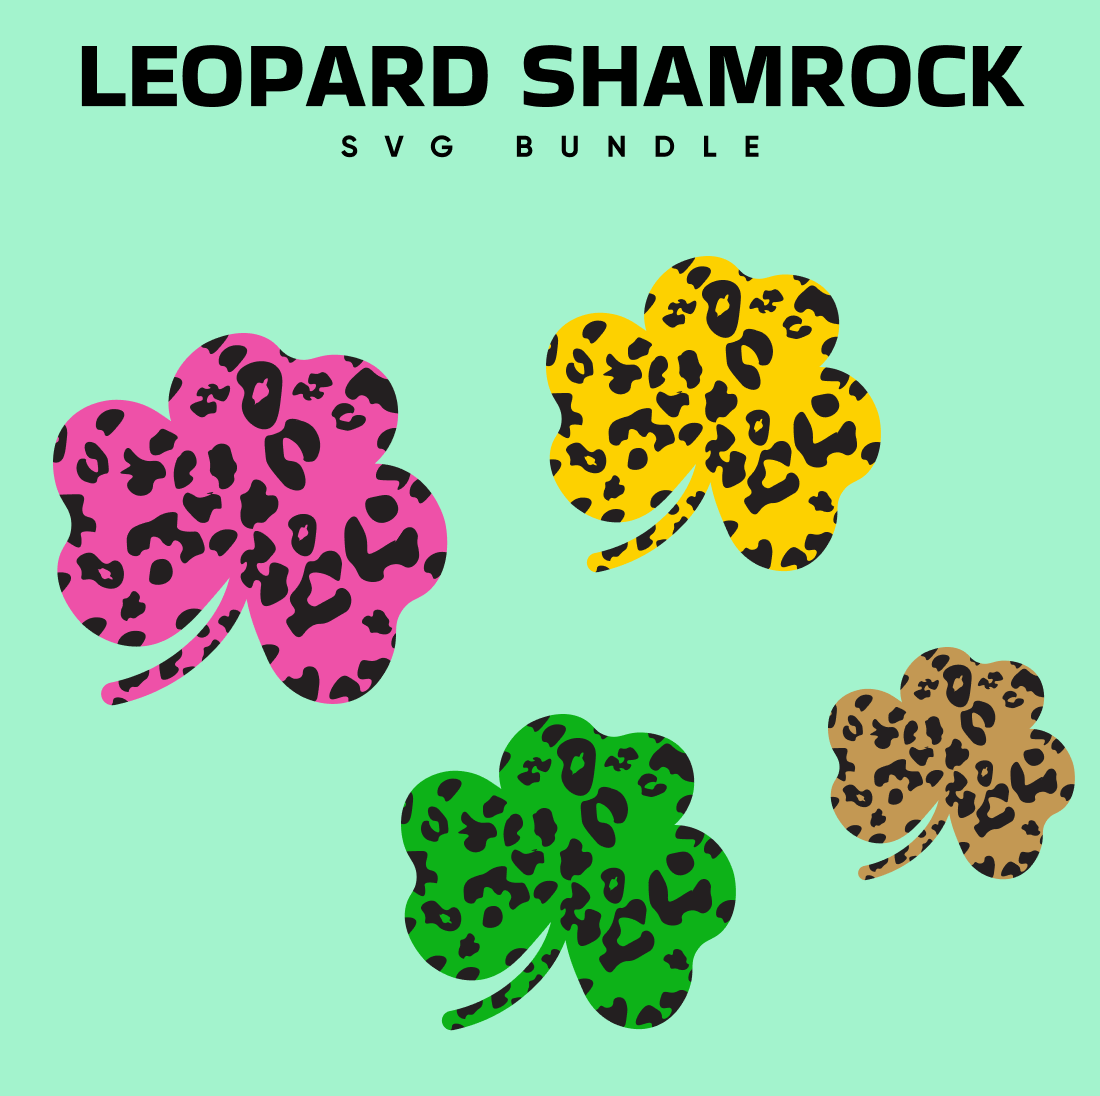 Leopard Shamrock SVG.